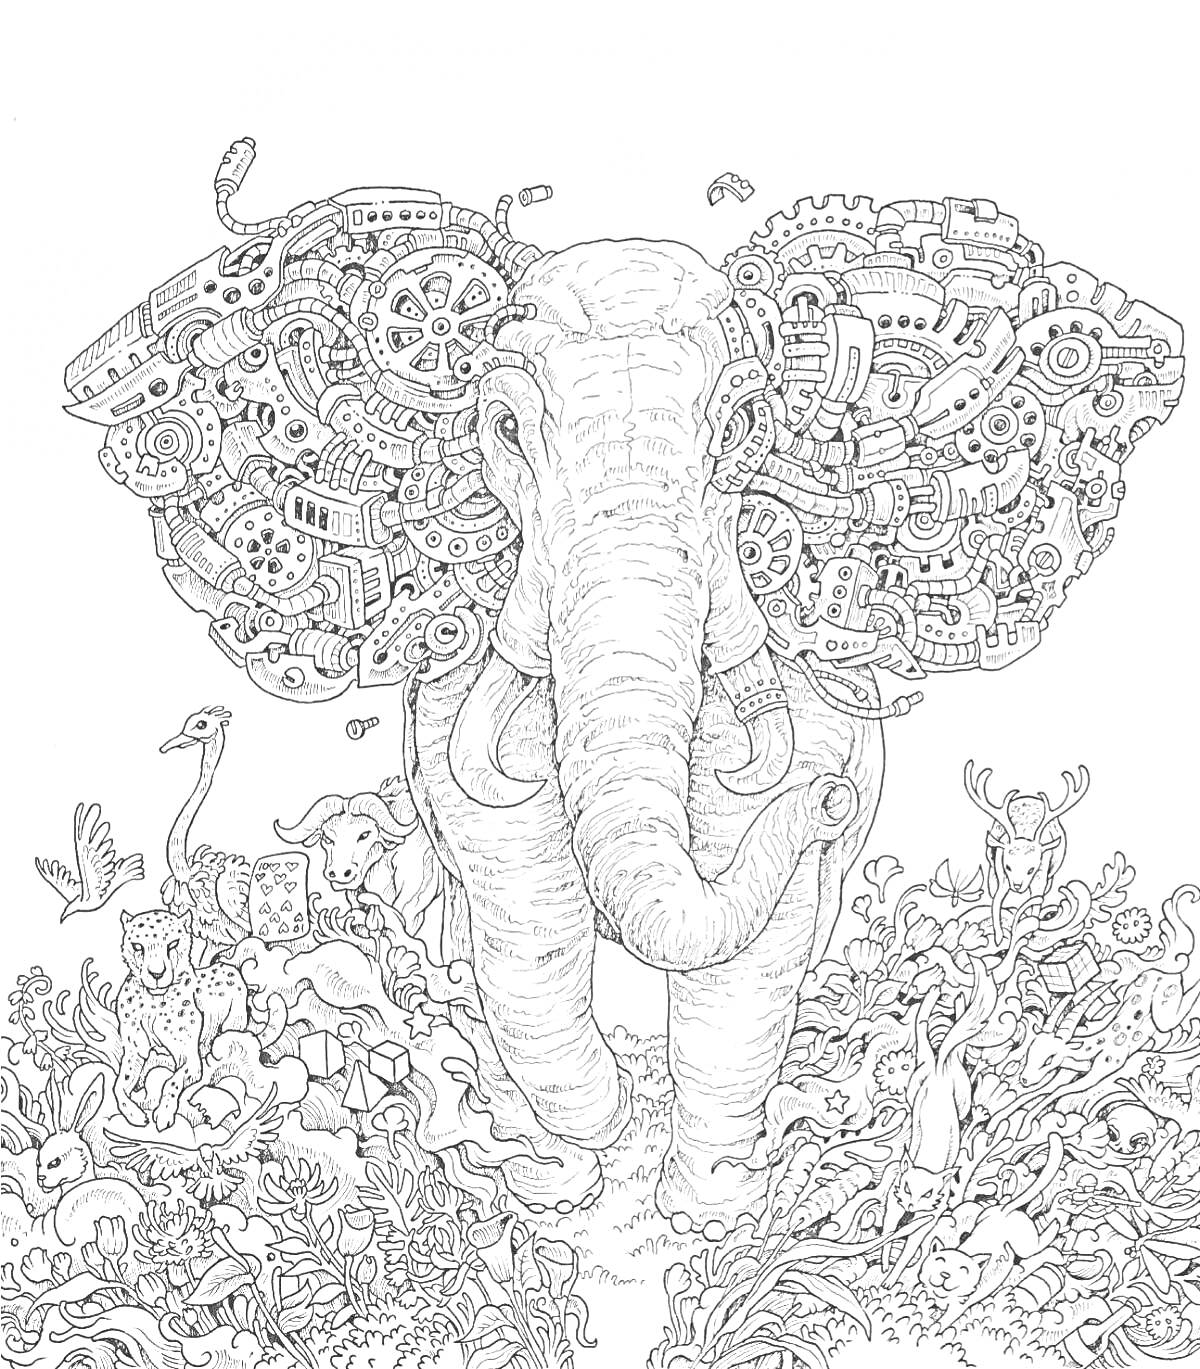 слон с ушами из шестеренок и механизмов, окружённый животными и растительностью